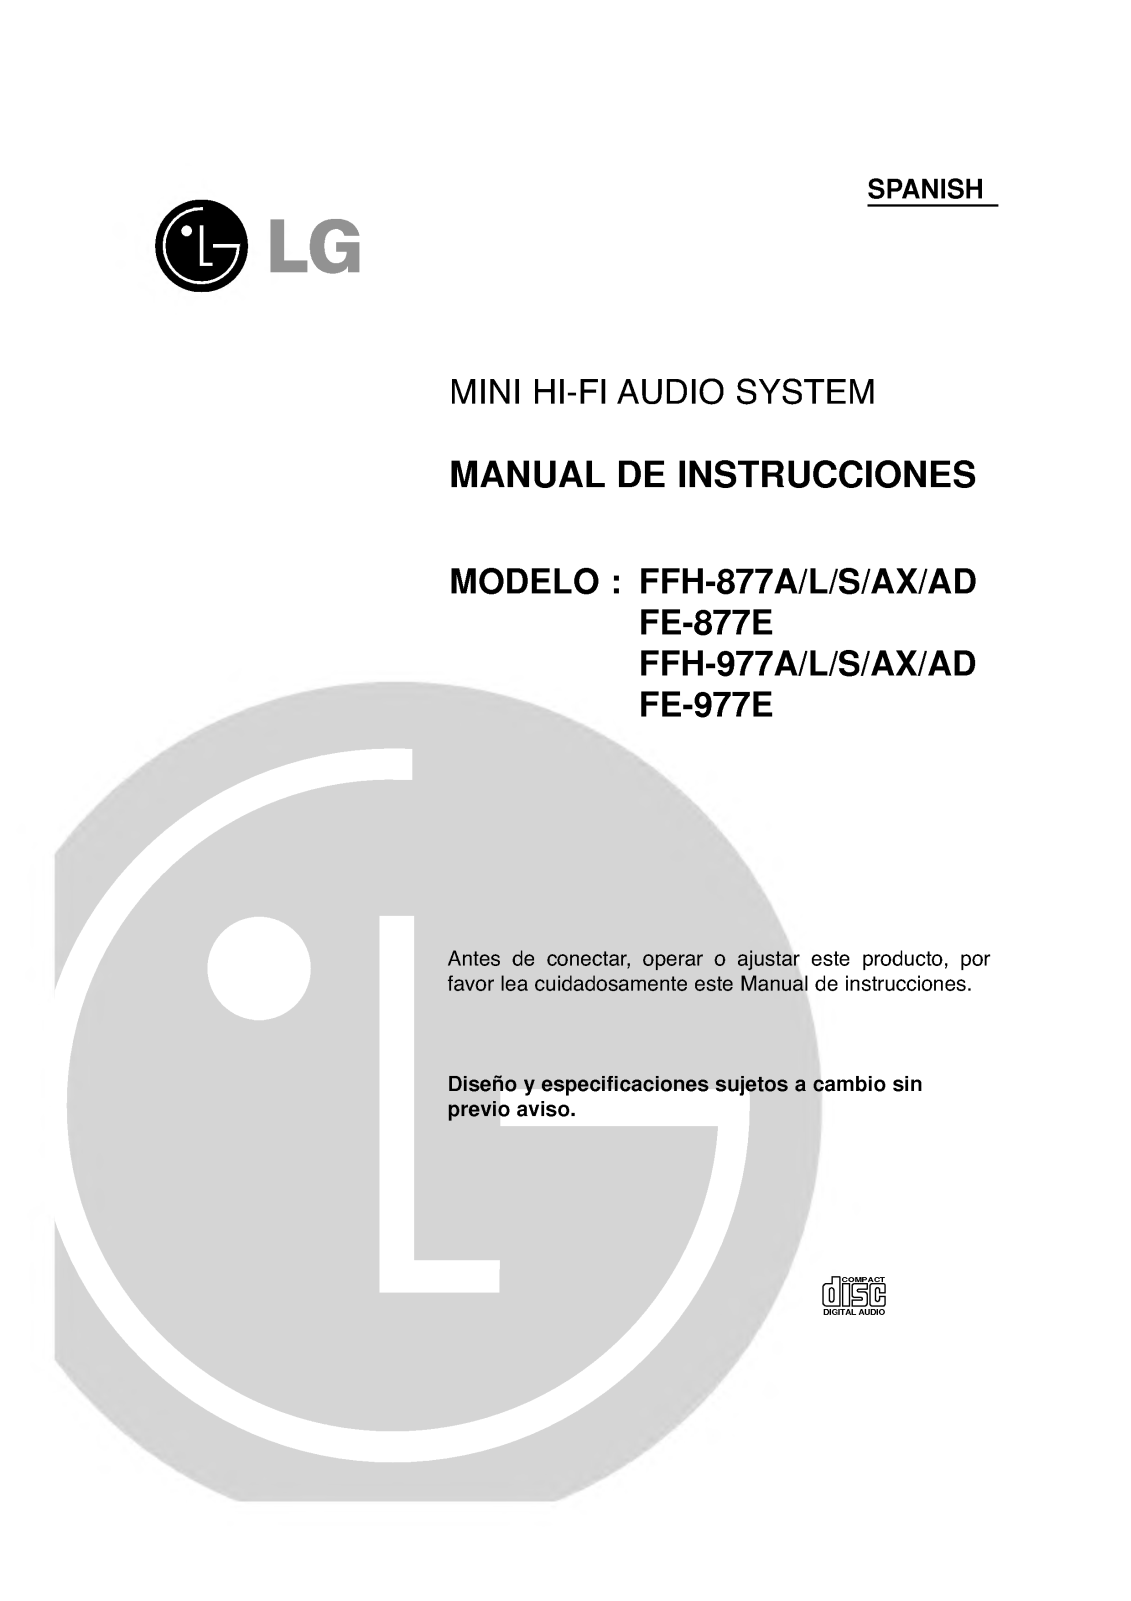 Lg FFH-877A, FFH-877L, FFH-877S, FFH-877AX, FFH-877AD Instructions Manual